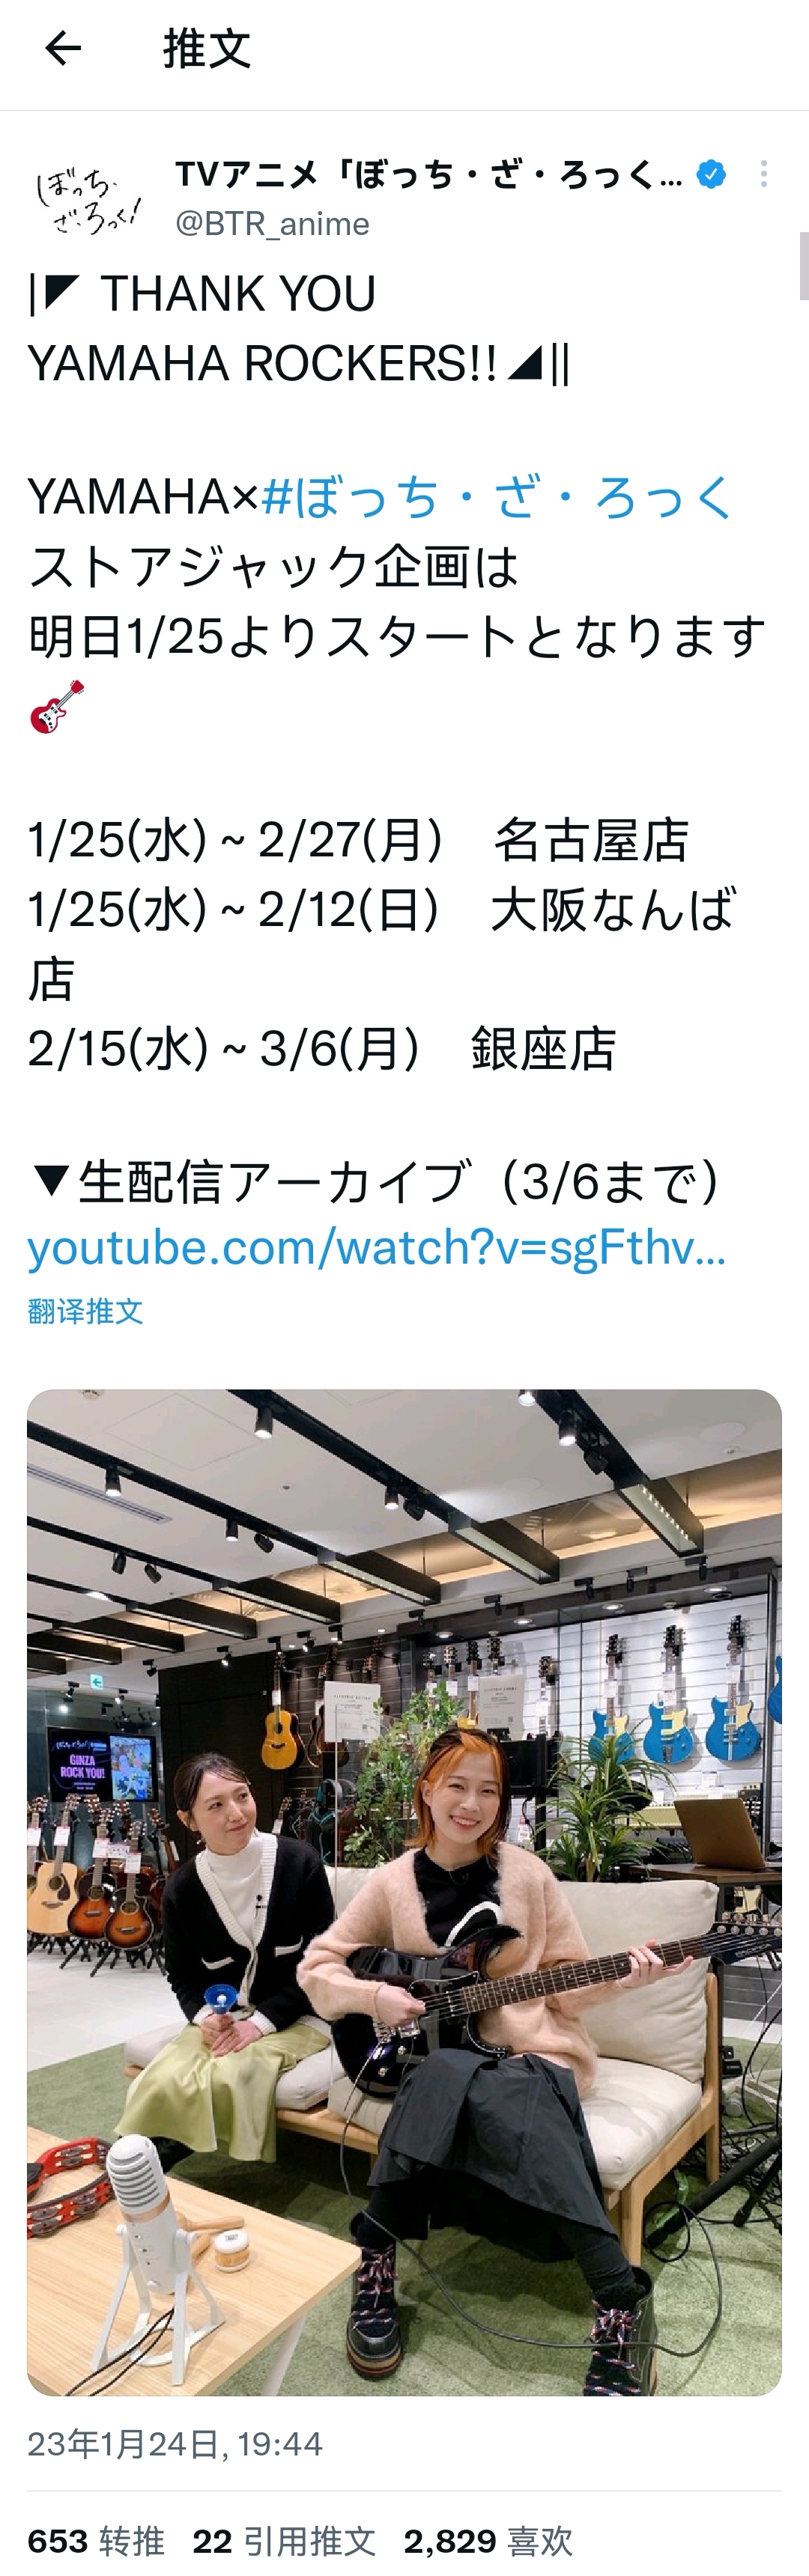 孤独摇滚 雅马哈联动直播 【GINZA ROCK YOU! 】staff组推特发言转播（生